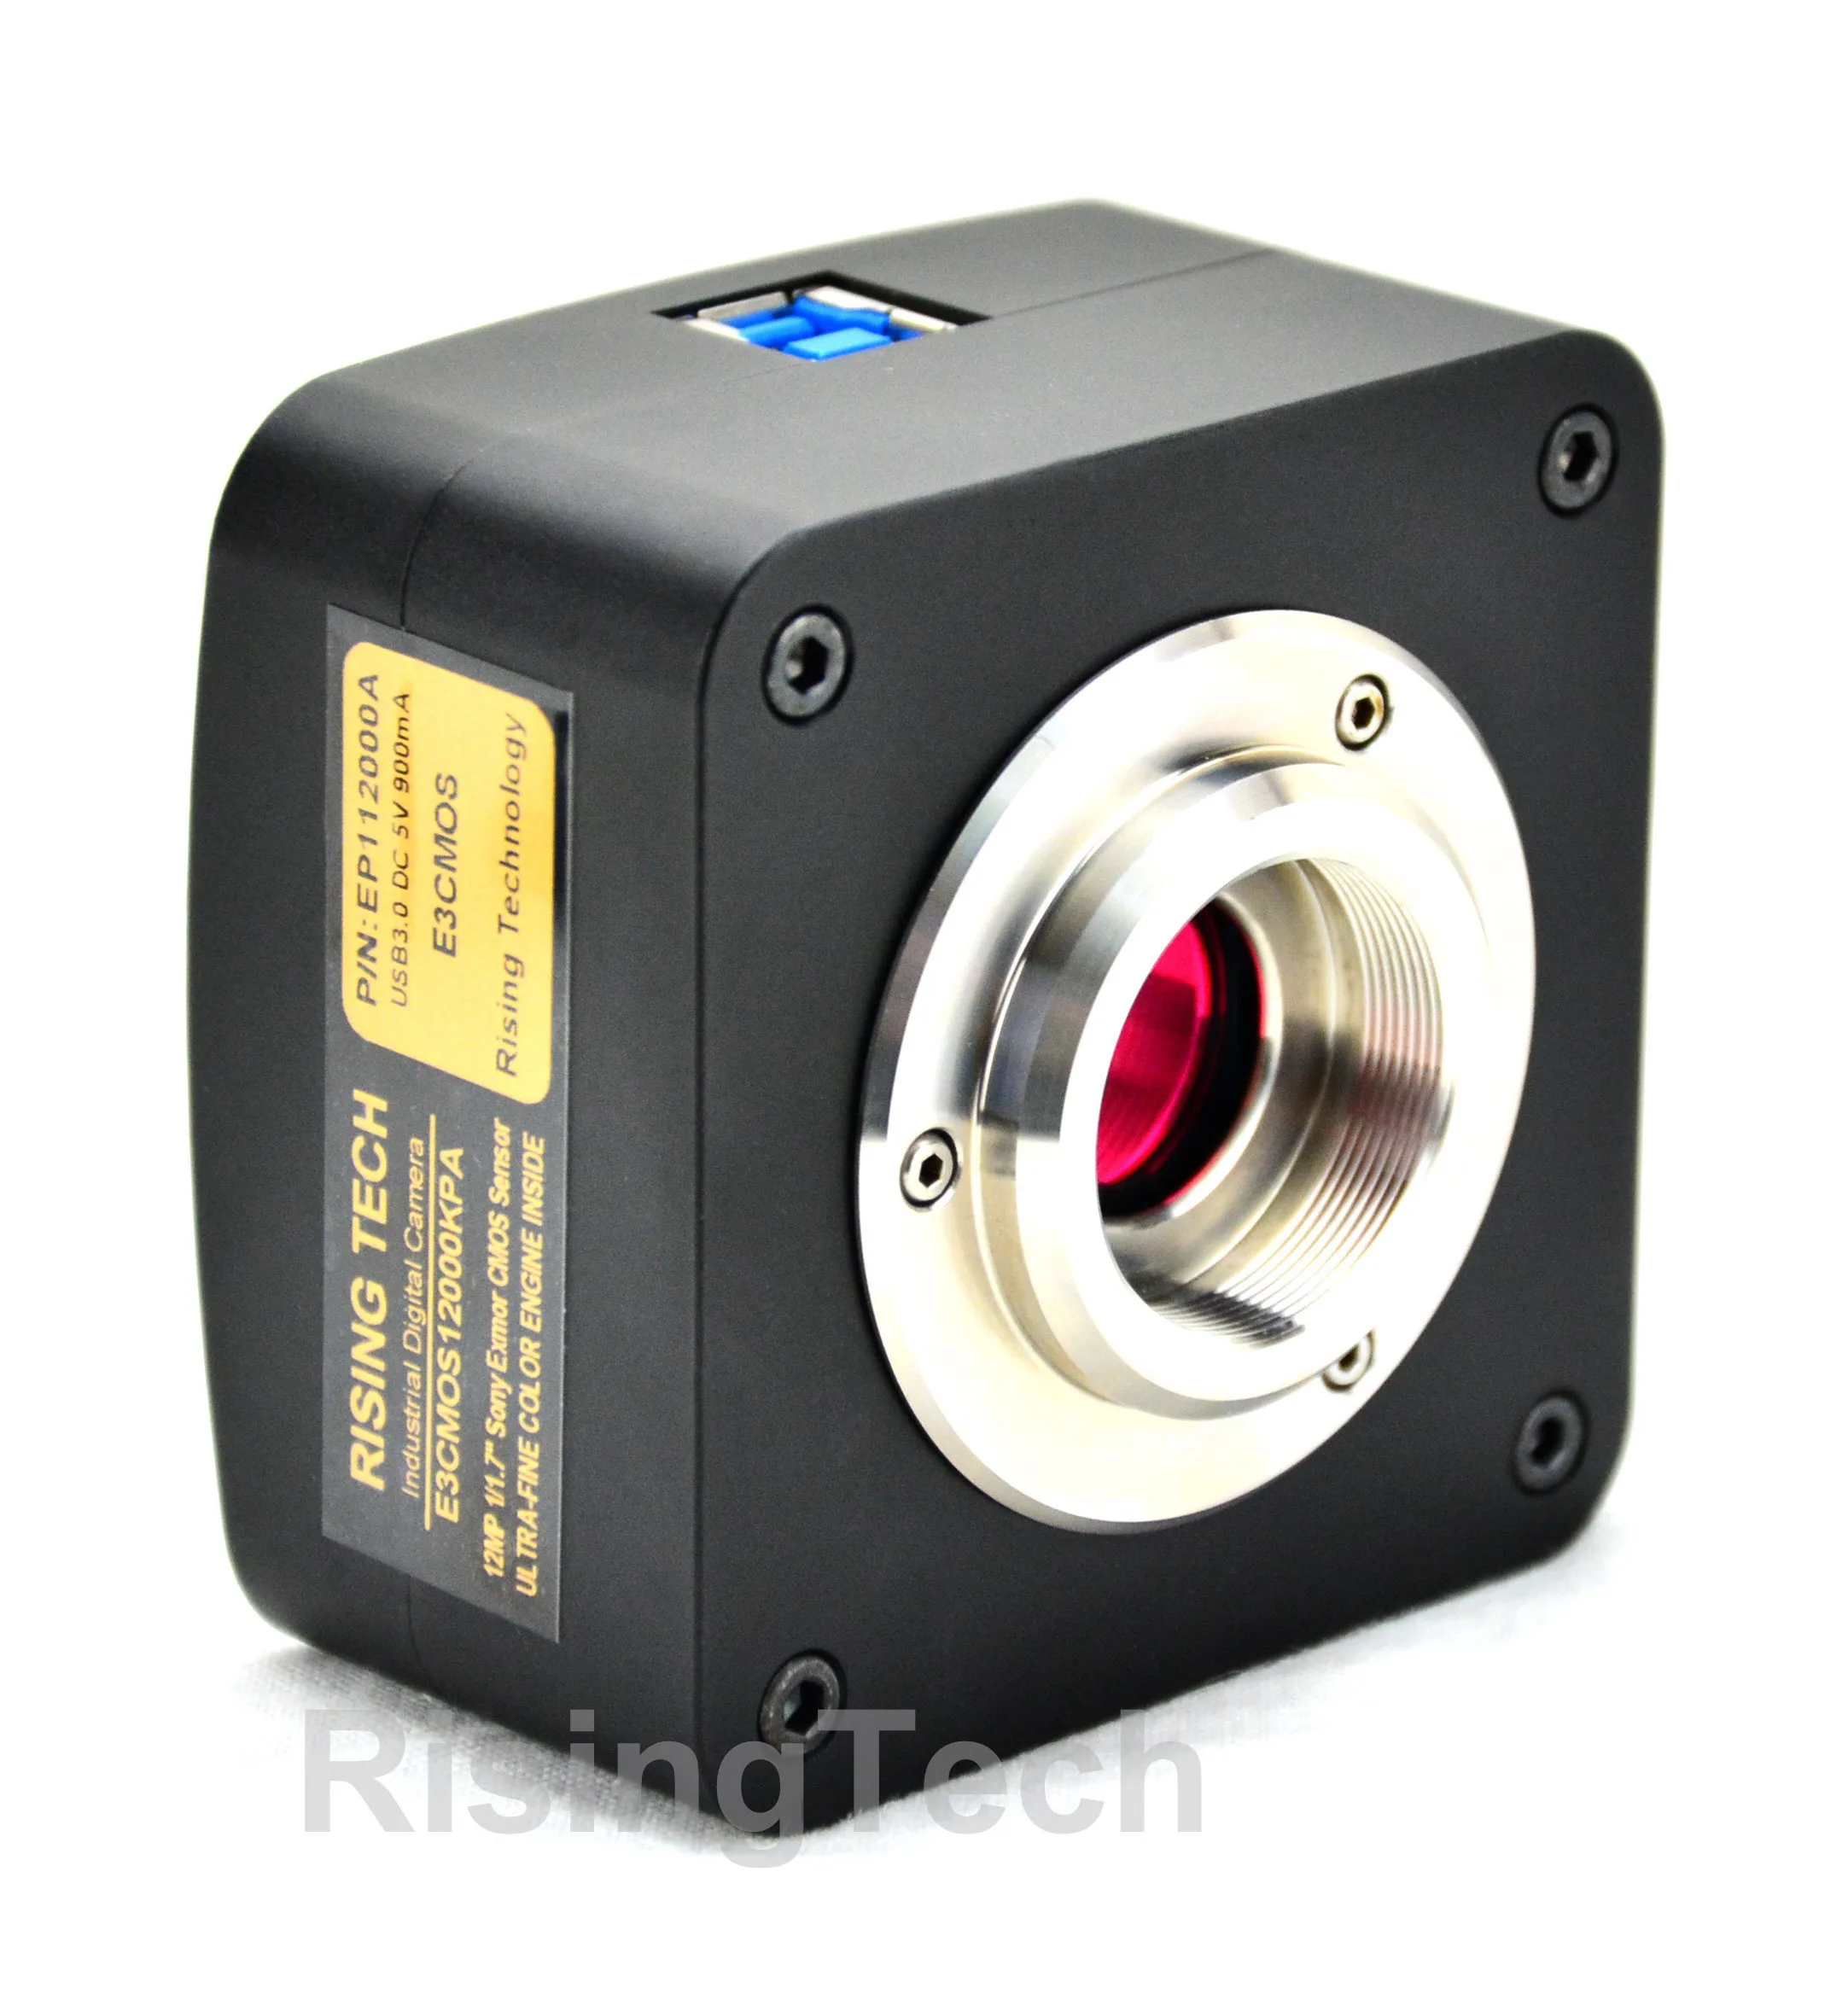 Ультра высокая чувствительность 520fps SONY imx287 USB3.0 Darkfield флуоресцентный микроскоп камера для использования в темноте и флуоресценции